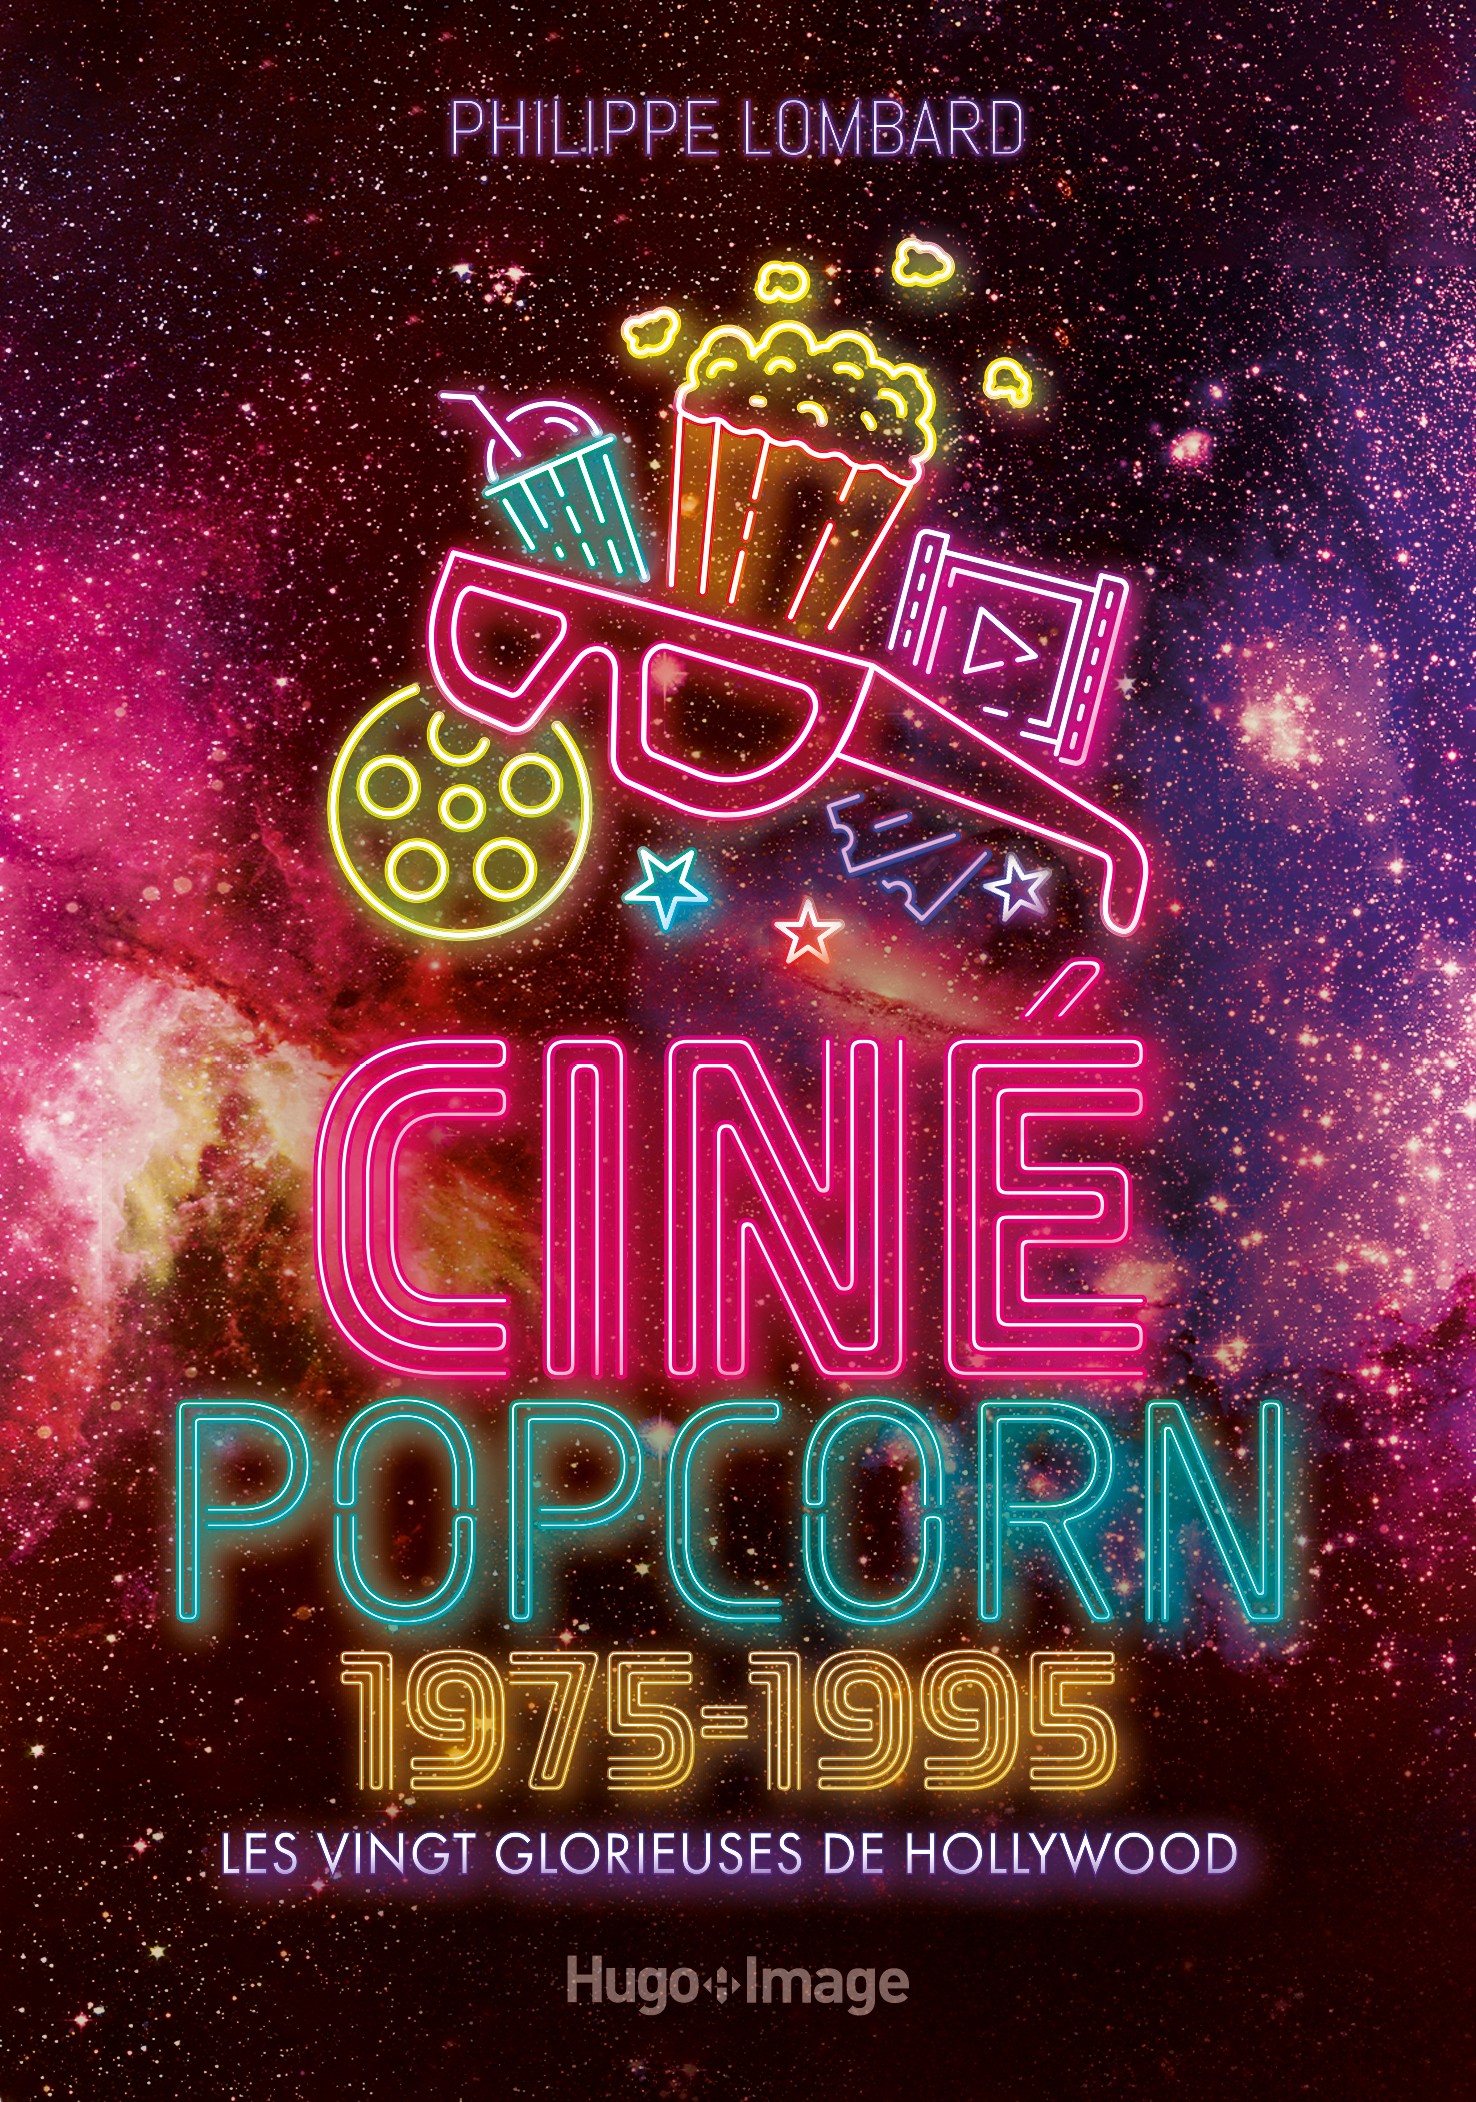 Ciné Pop-corn 